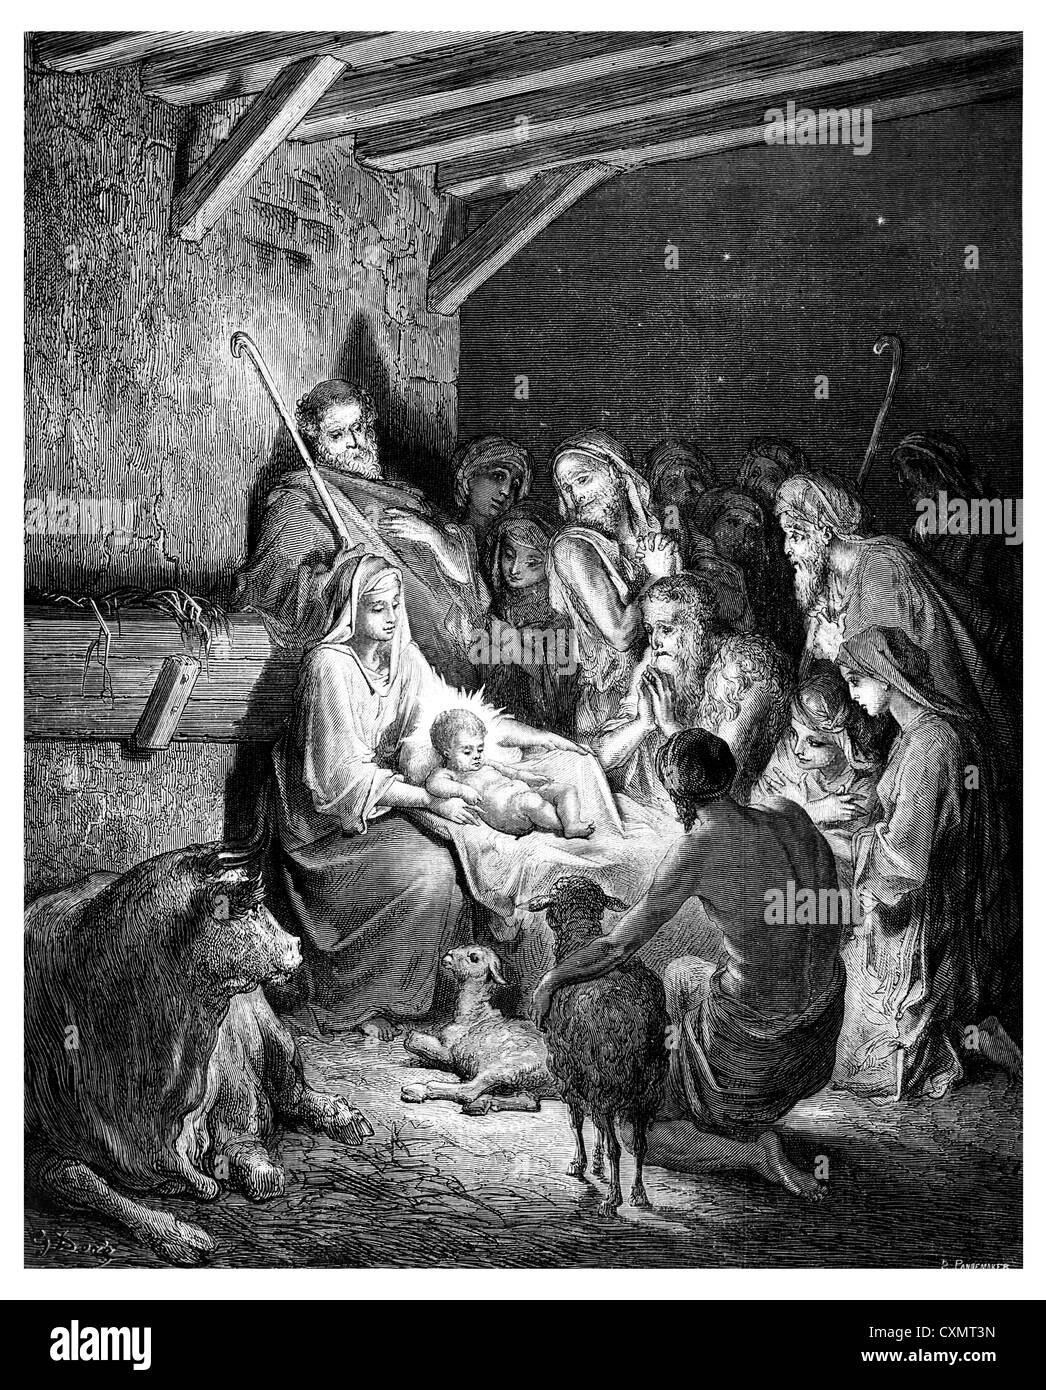 Nacimiento de jesus Imágenes de stock en blanco y negro - Alamy